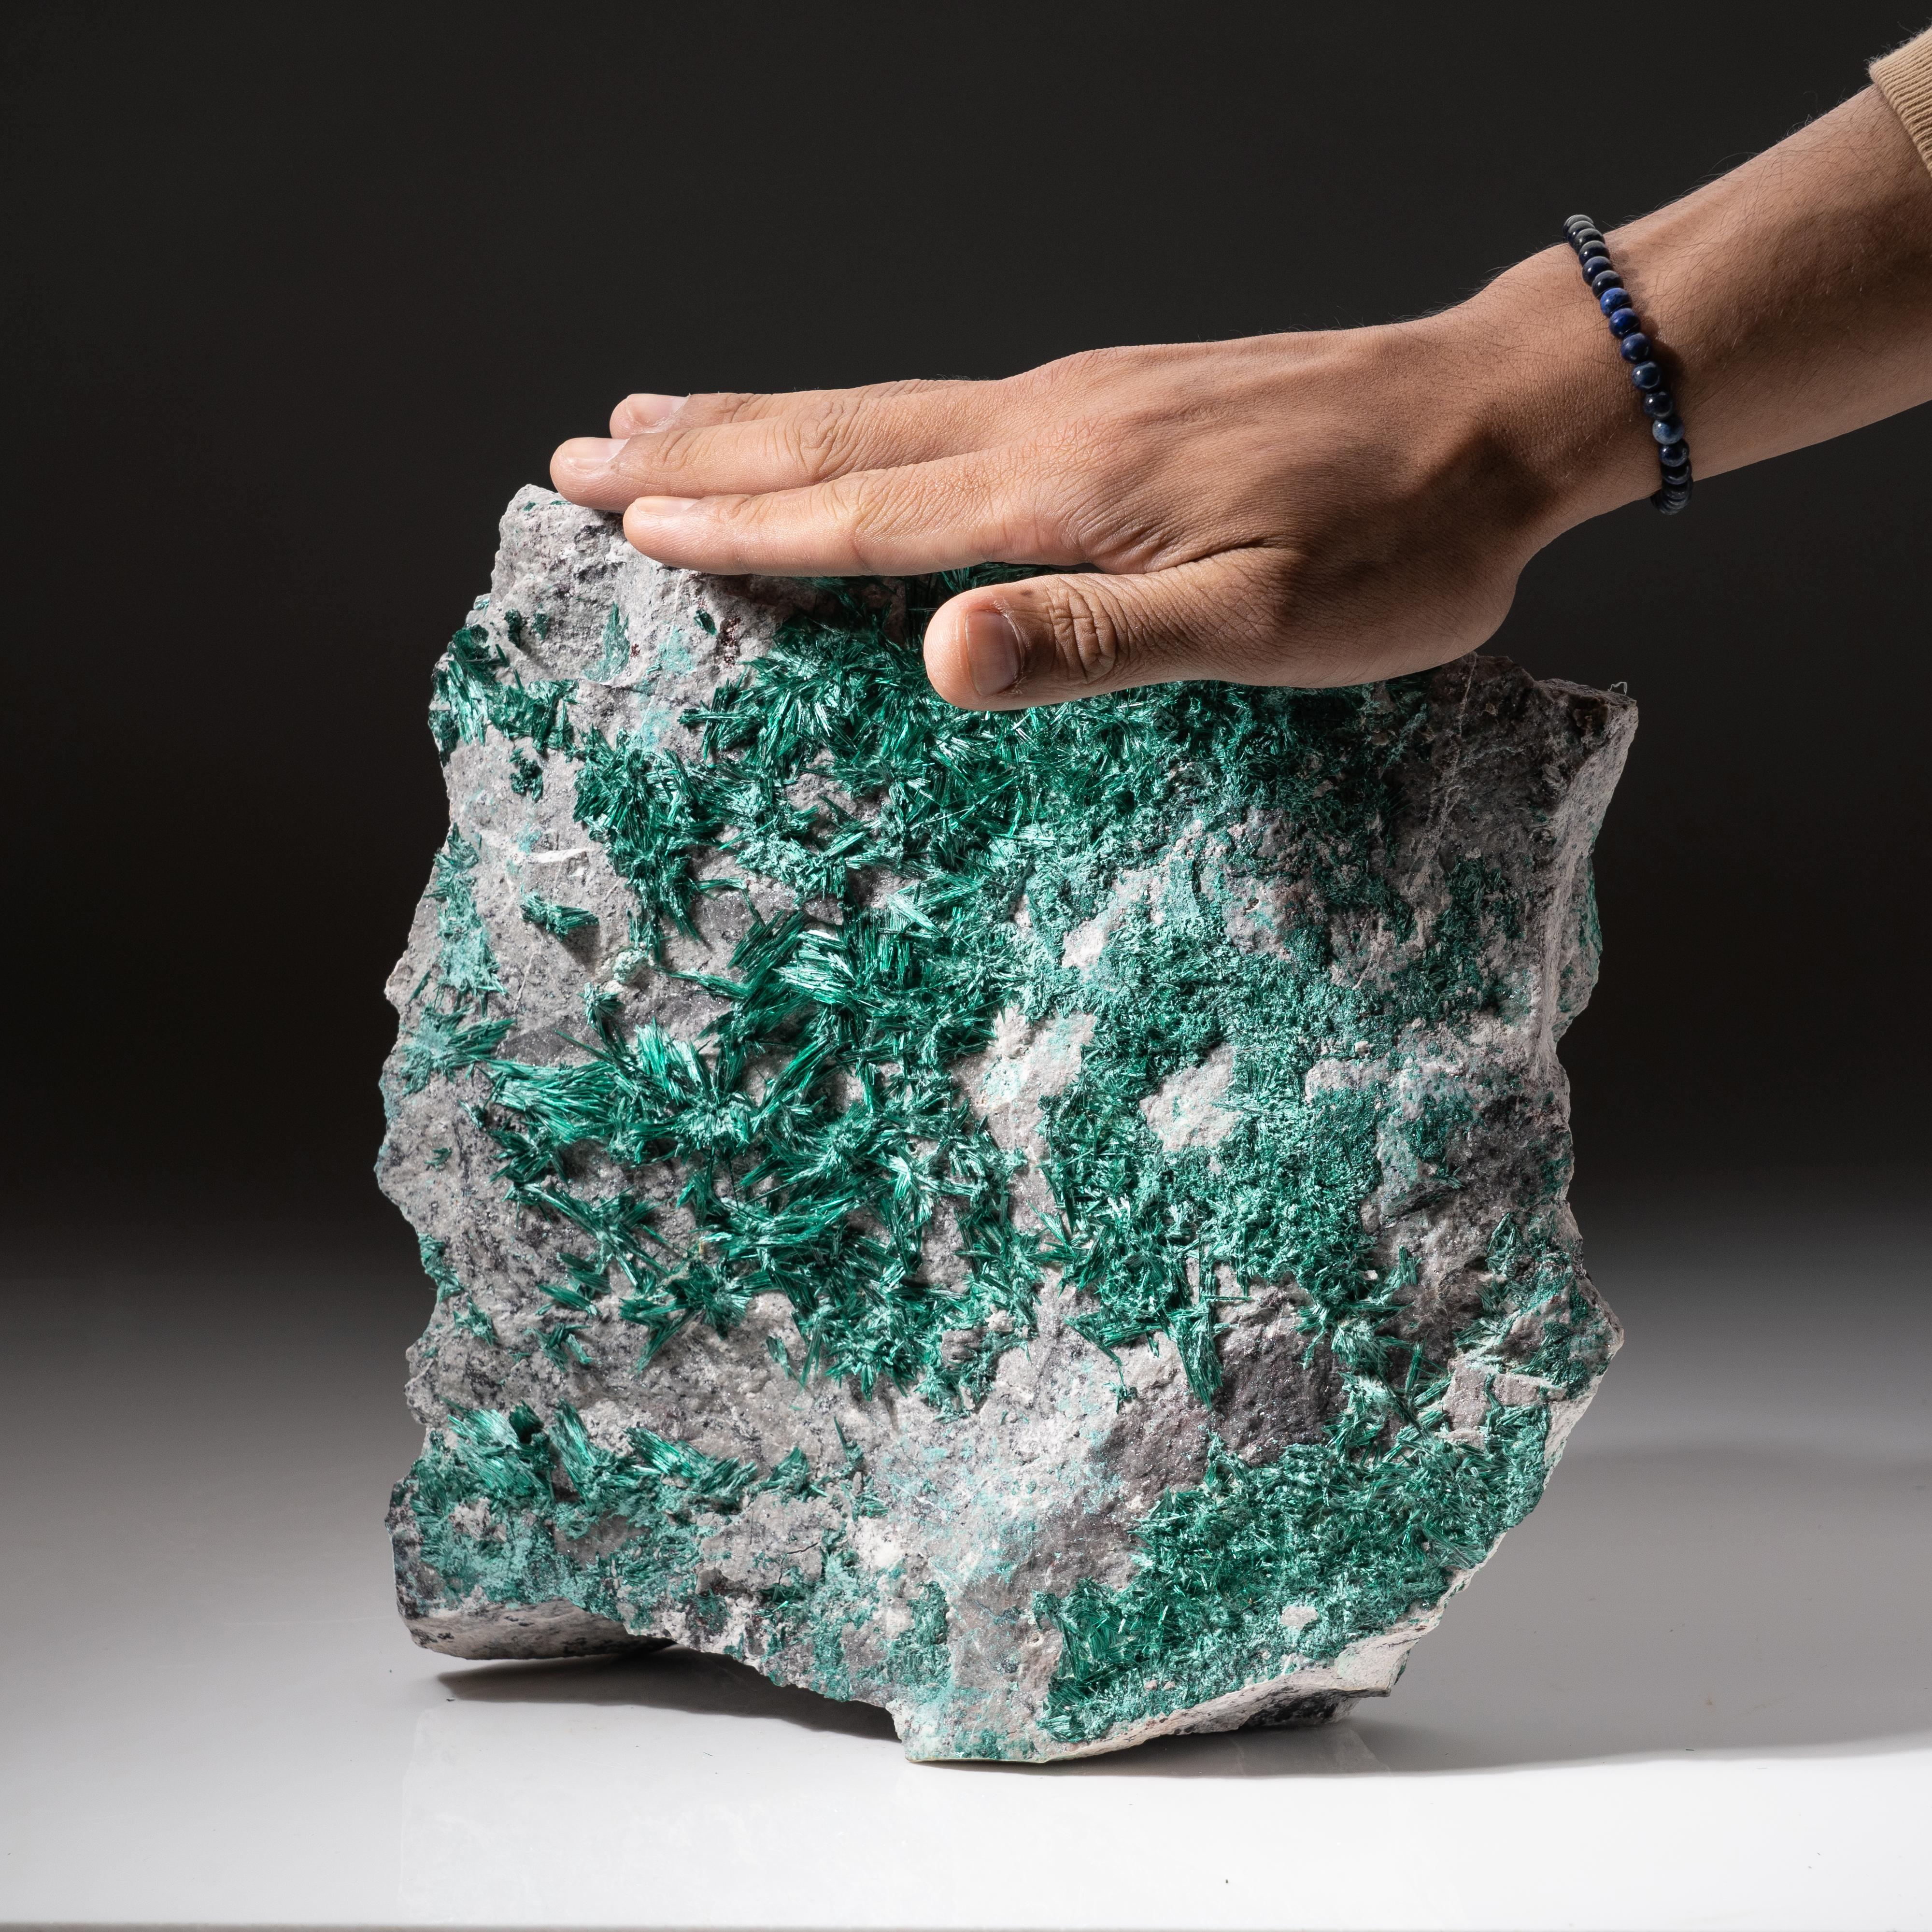 Mine Milpillas, Cuitaca, Sonora, Mexique

Grand spécimen de cabinet de cristaux aciculaires vert vif de brochantite bordant un côté d'une matrice grise. Les cristaux de brochantite sont de couleur vert émeraude avec des cristaux en aiguilles minces